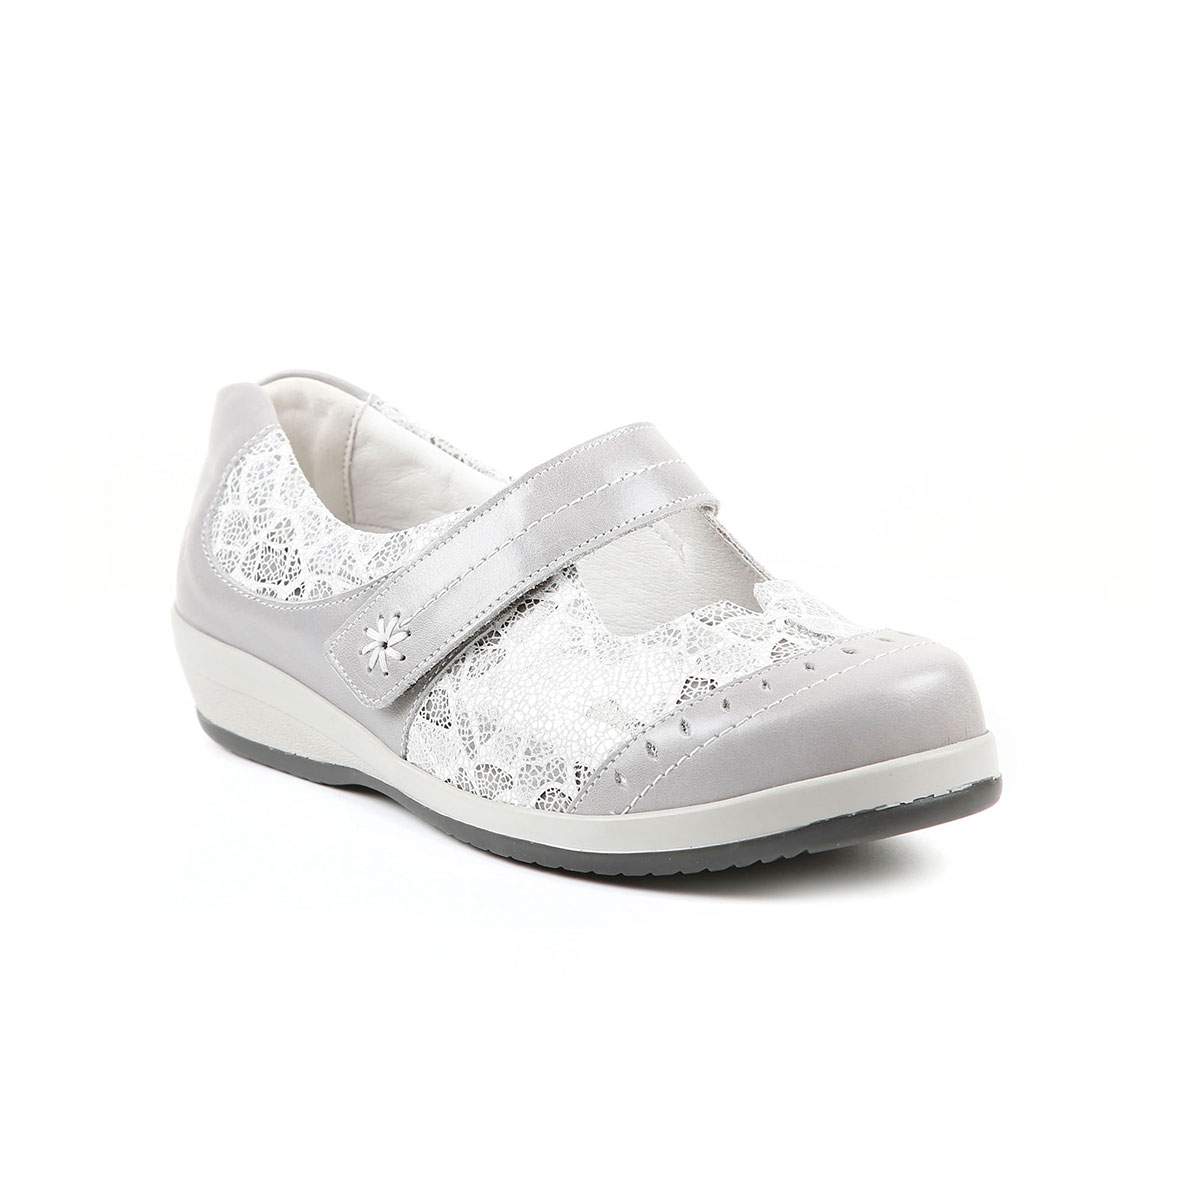 White and grey Filton shoe